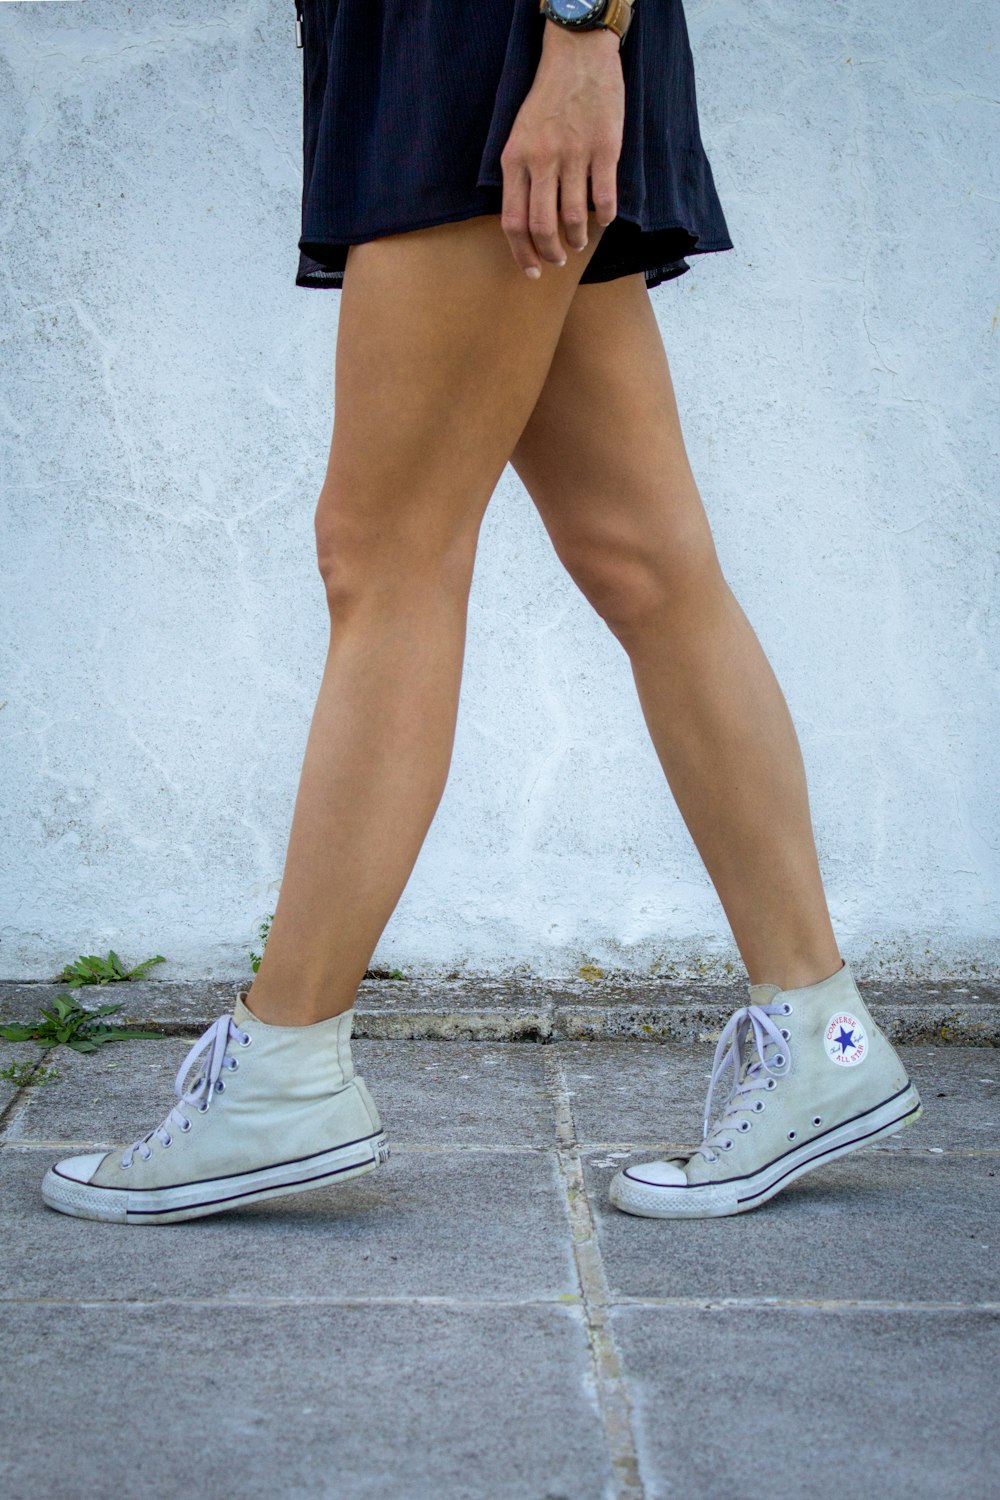 Une femme marchant sur un trottoir portant des chaussures de tennis